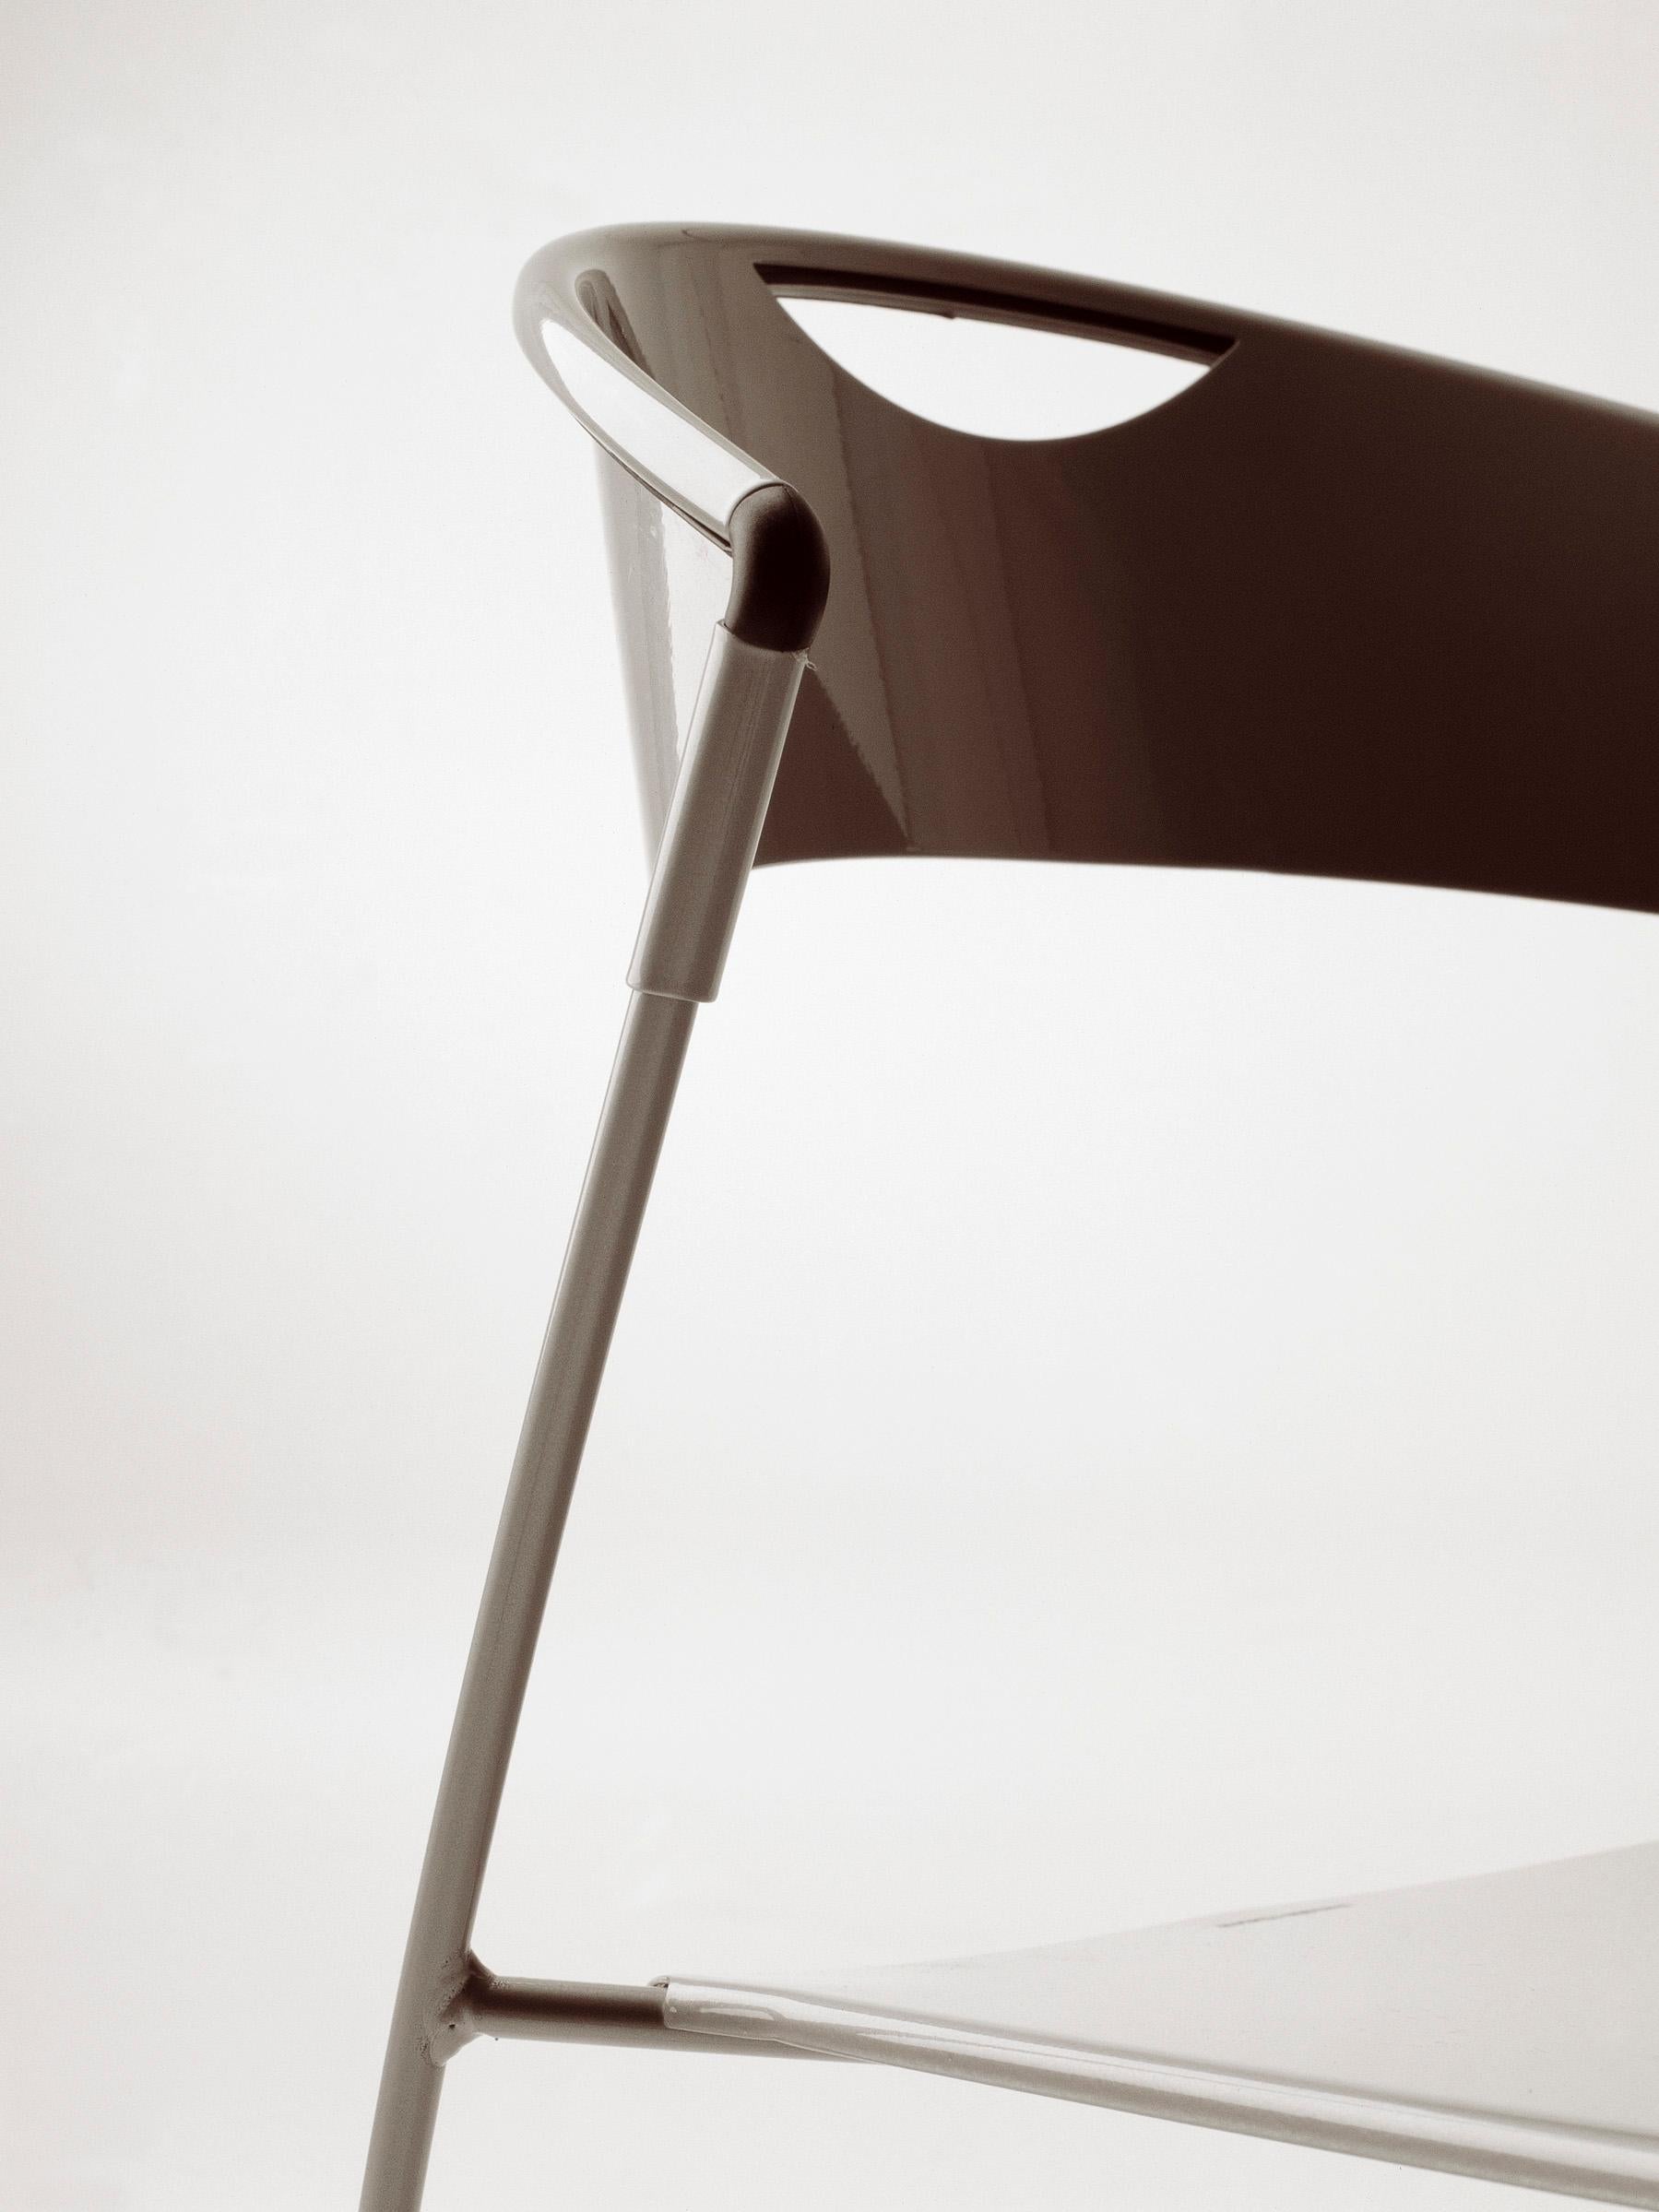  Baleri Italia Juliette Stackable Chair in Black Steel by Hannes Wettstein For Sale 1